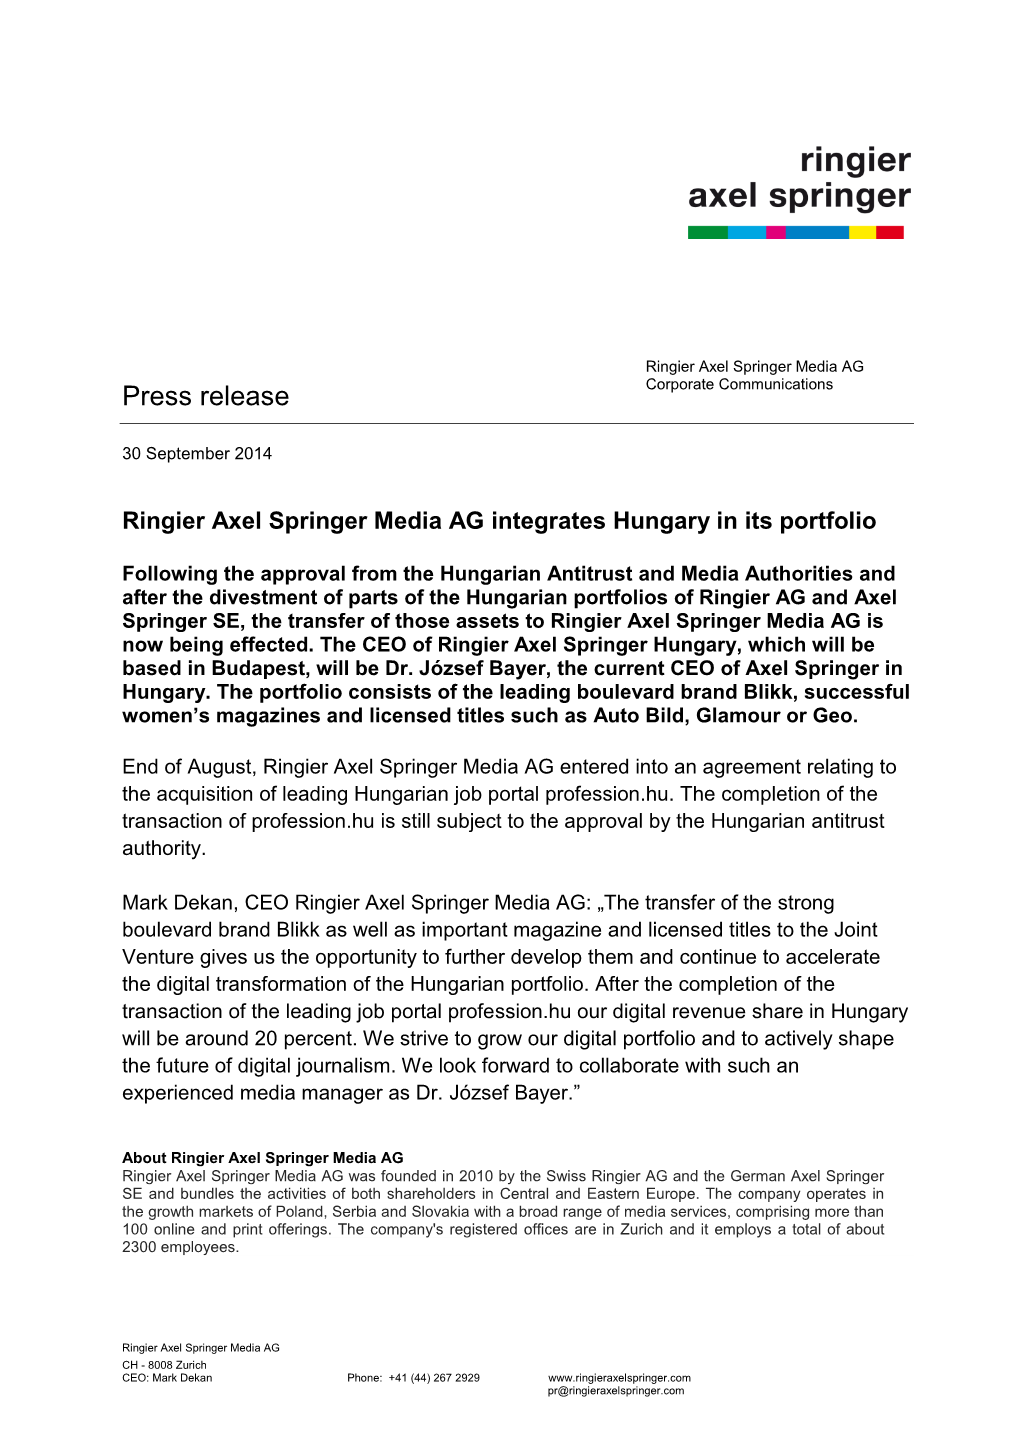 Media Release Ringier Axel Springer Media AG